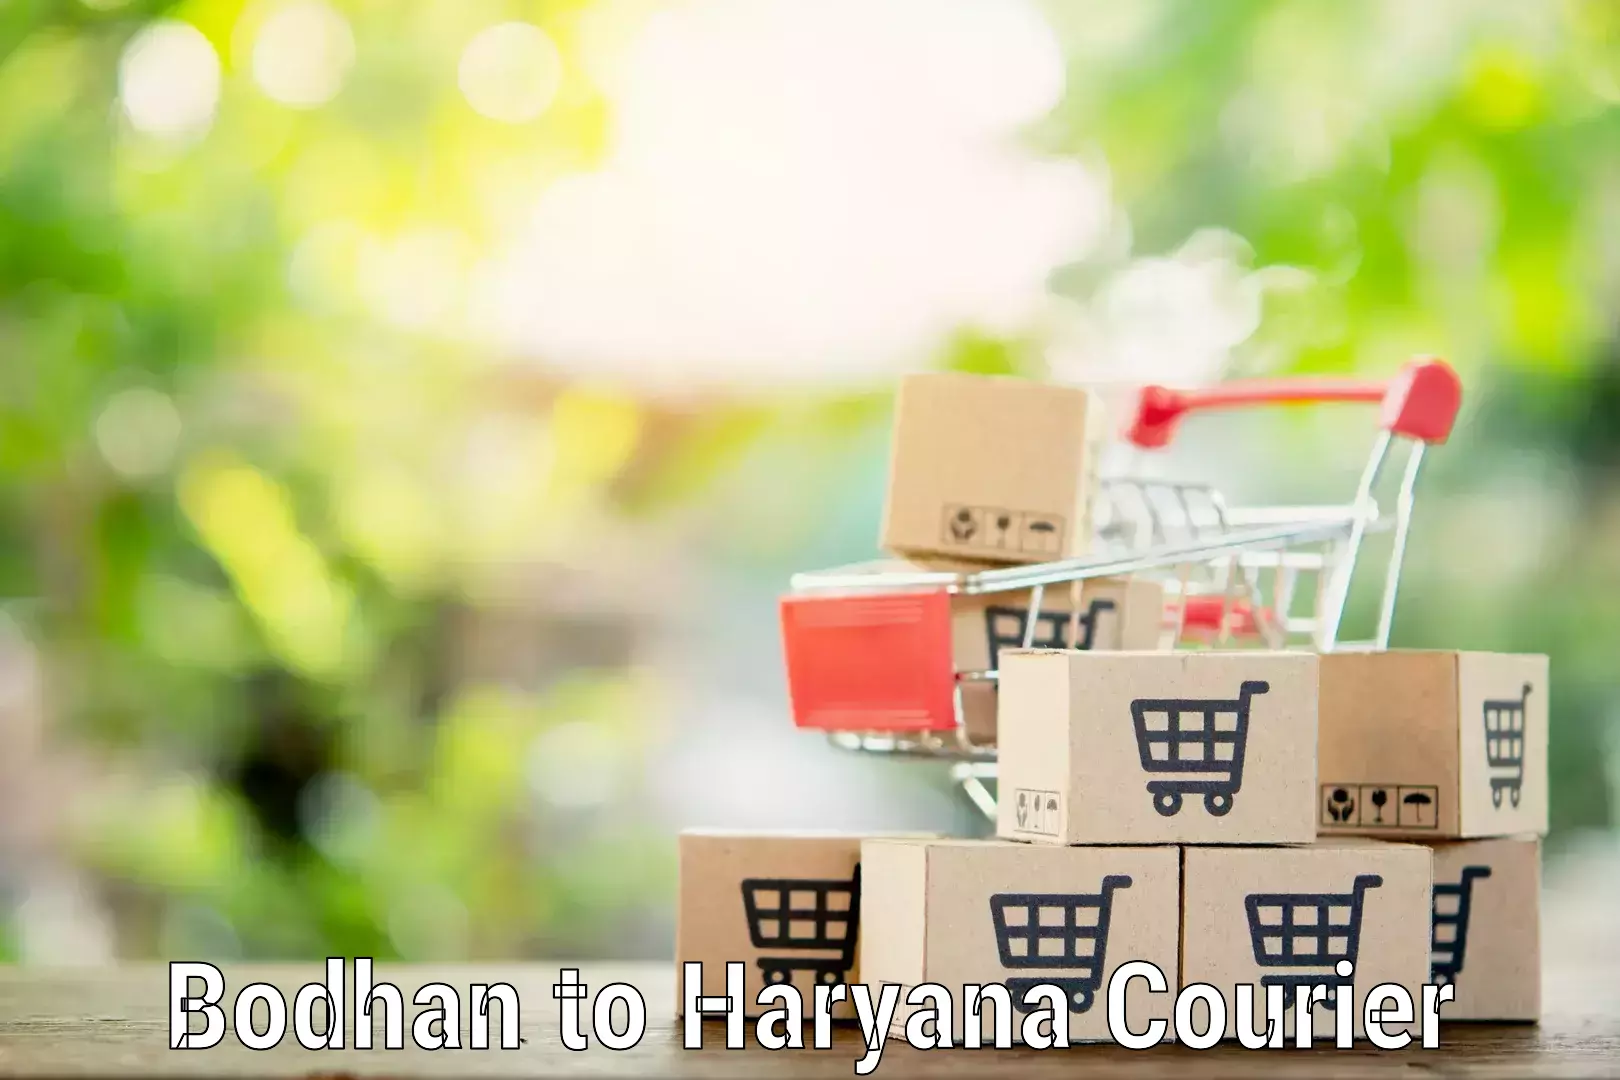 Reliable movers Bodhan to NCR Haryana